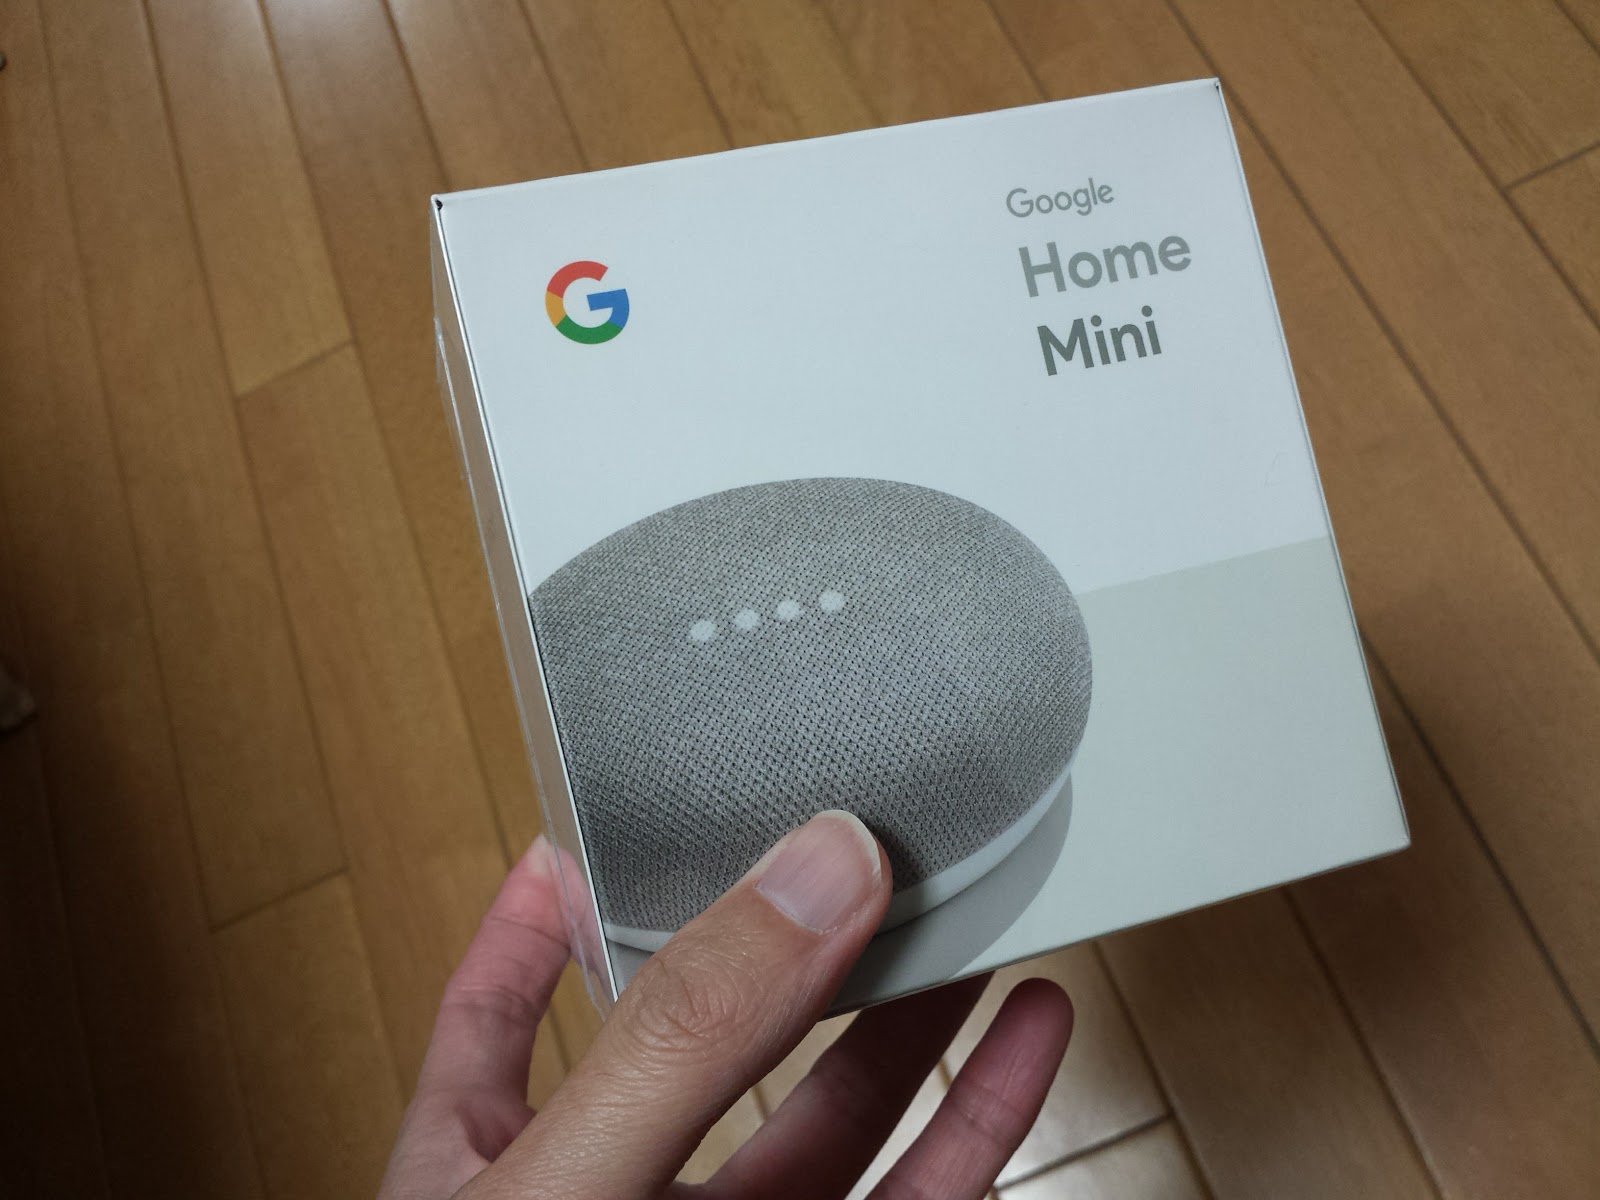 Google Home Miniを購入